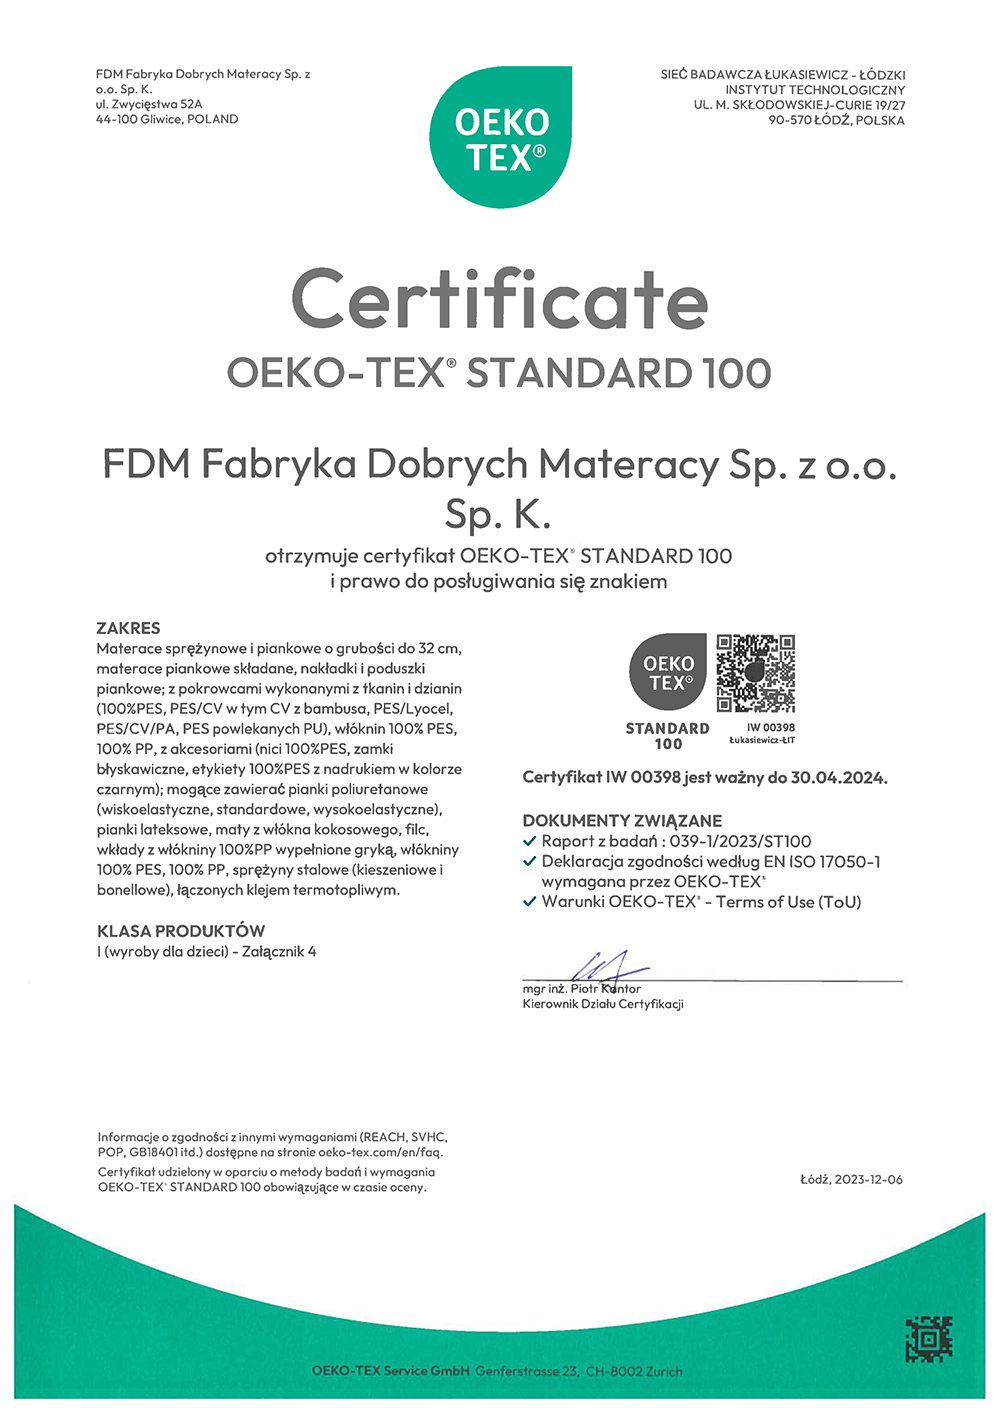 Certyfikat OEKO-TEX 2023 dla produktów FDM